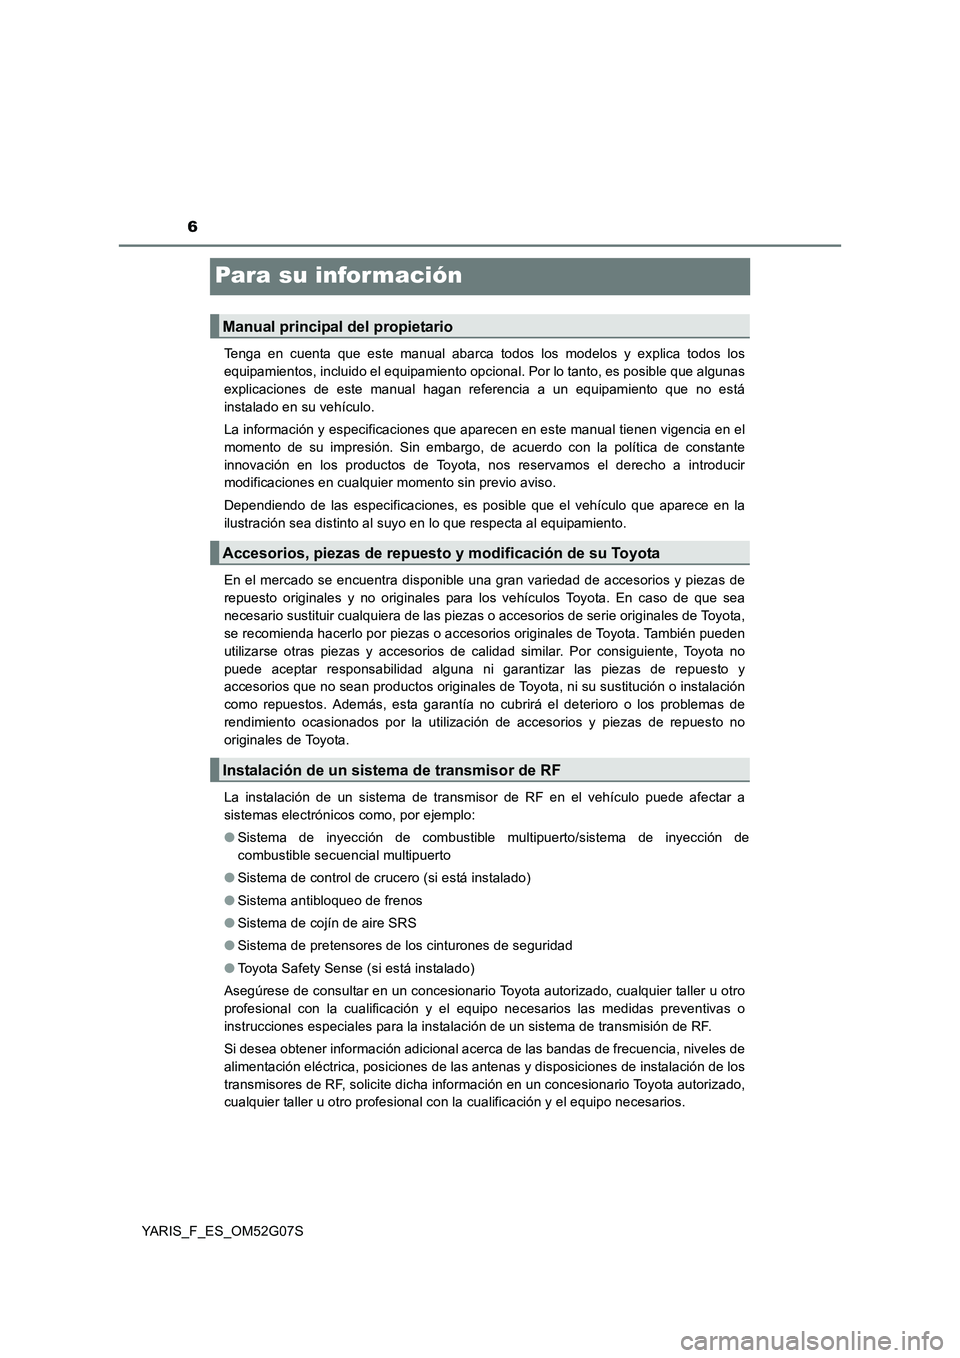 TOYOTA YARIS 2016  Manuale de Empleo (in Spanish) 6
YARIS_F_ES_OM52G07S
Para su información
Tenga en cuenta que este manual abarca todos los modelos y explica todos los 
equipamientos, incluido el equipamiento opcional. Por lo tanto, es posible que 